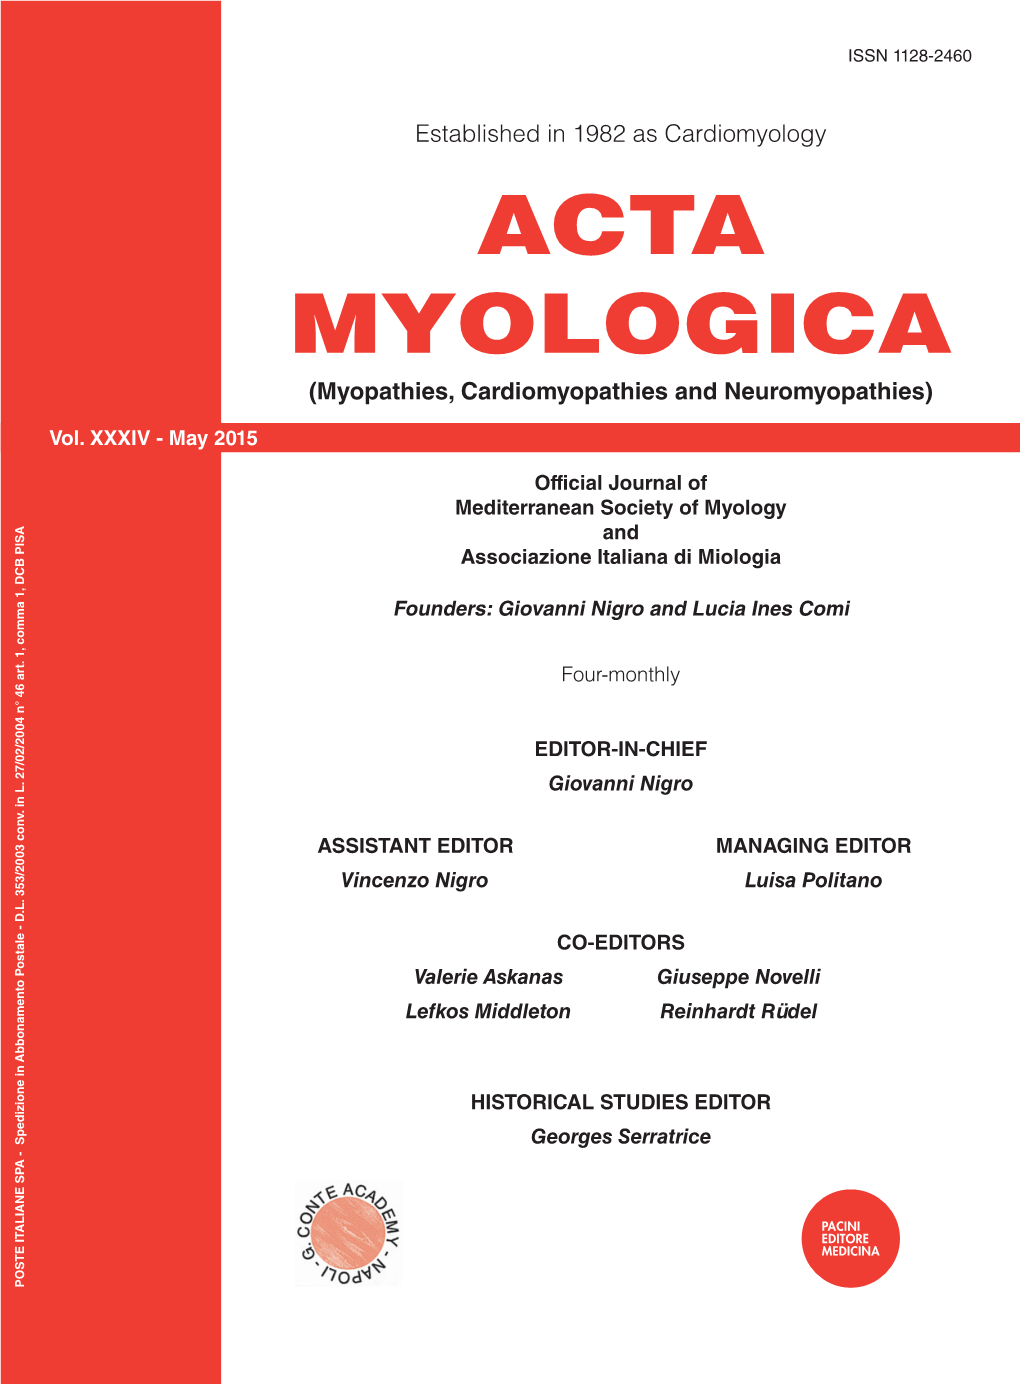 ACTA MYOLOGICA (Myopathies, Cardiomyopathies and Neuromyopathies)